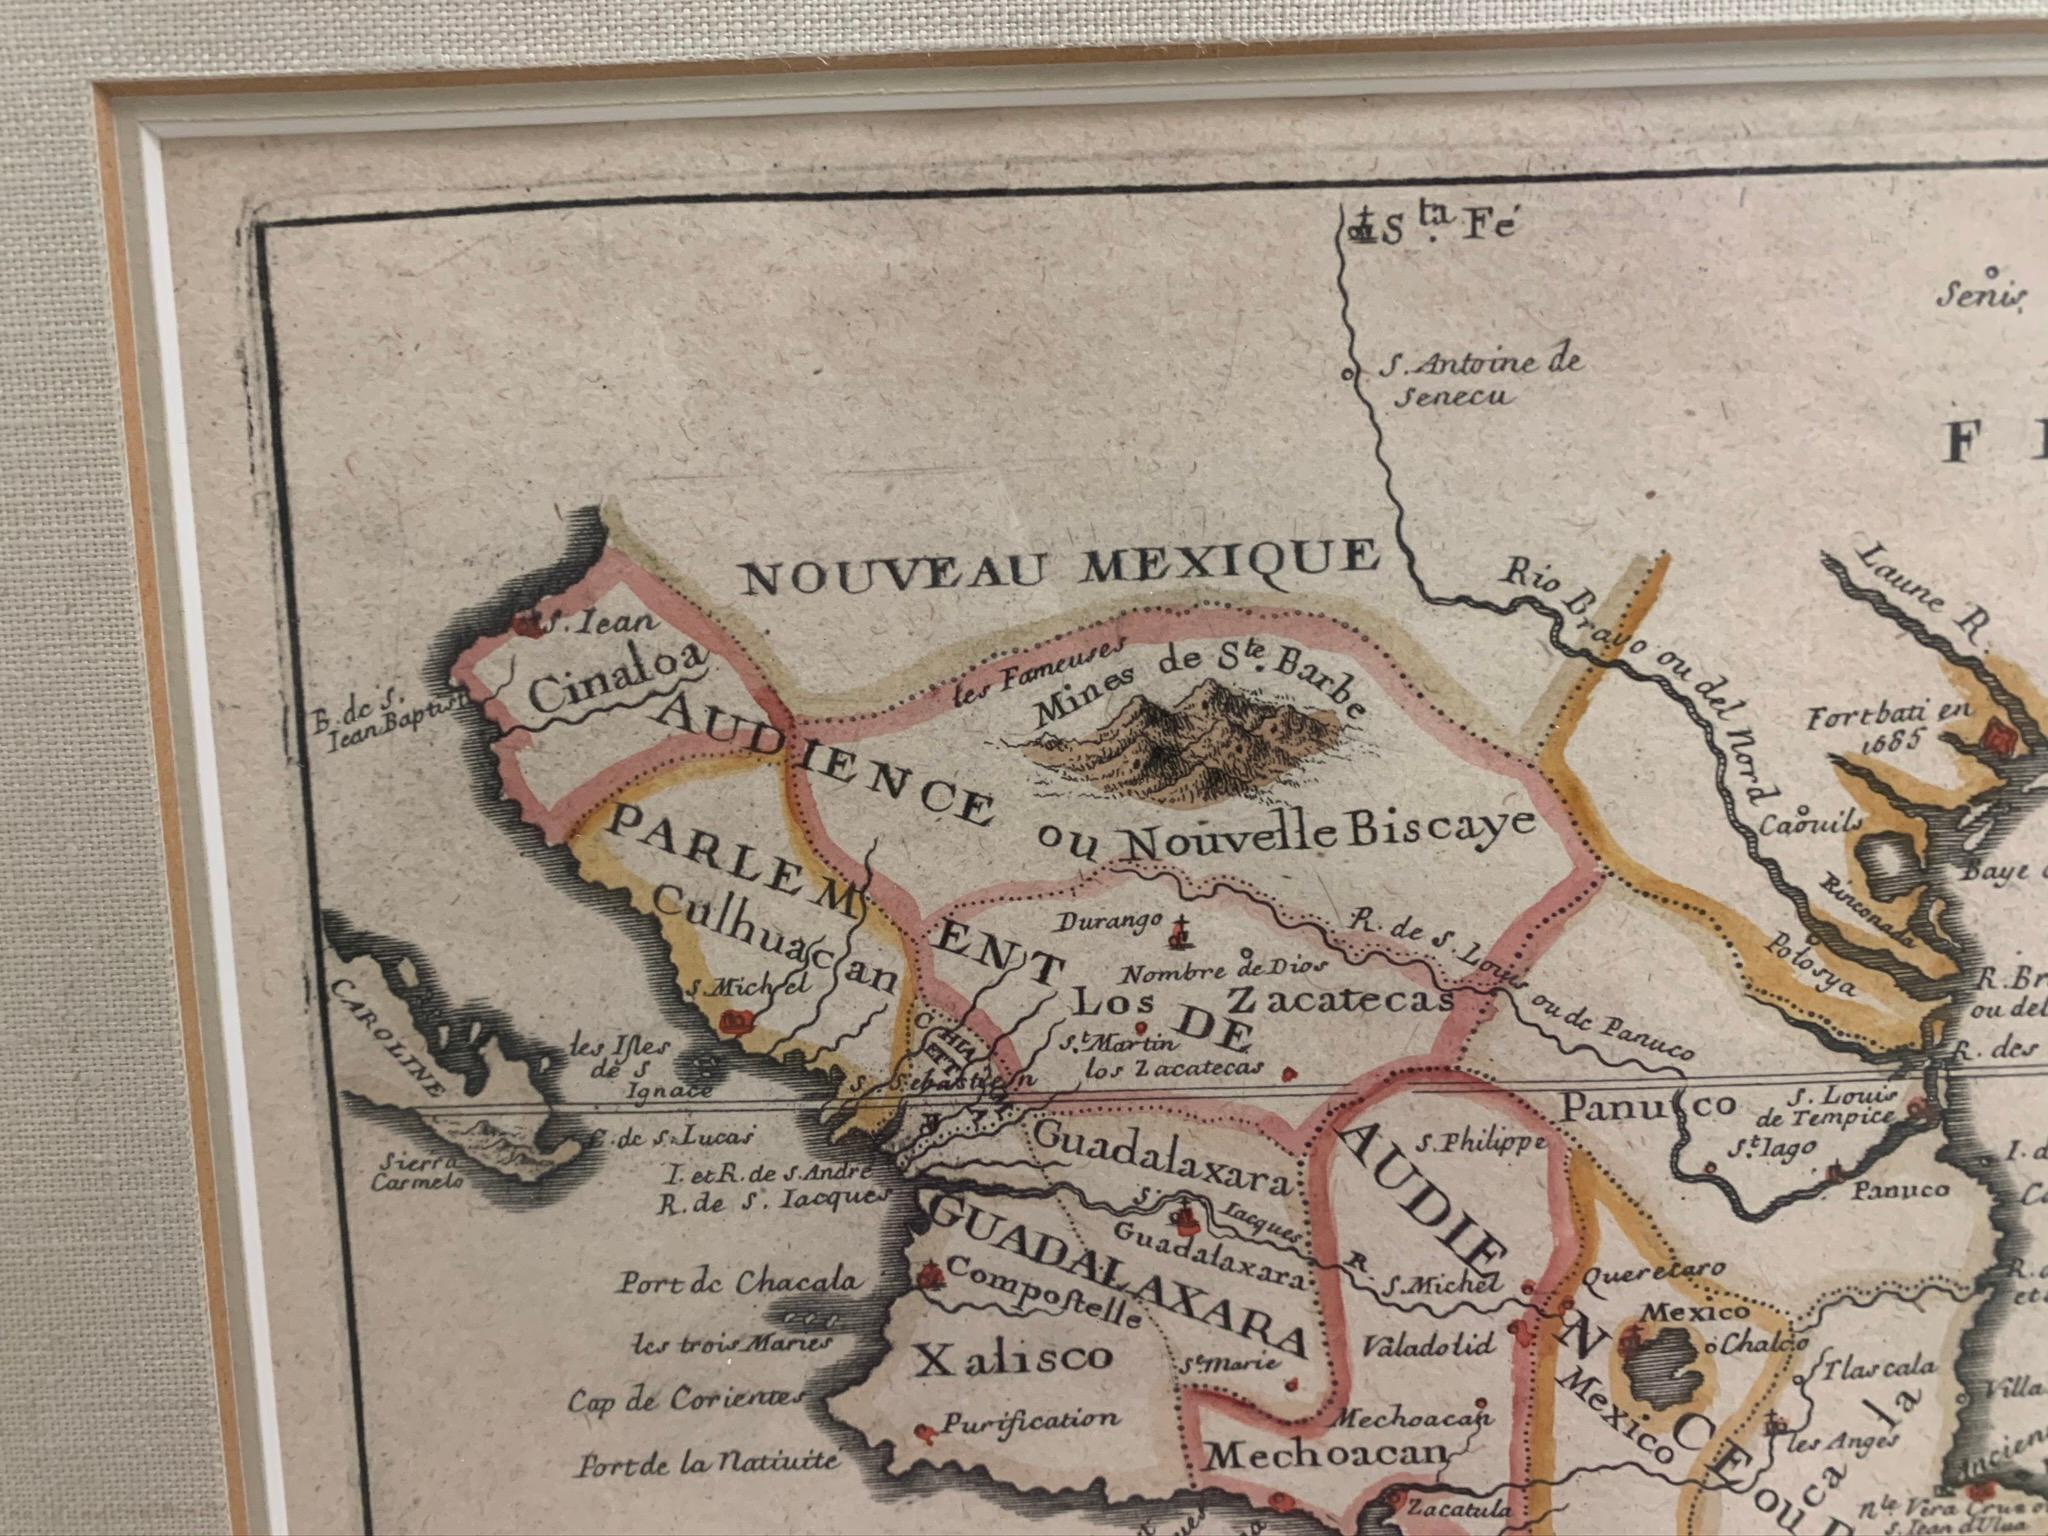 Carte encadrée du Mexique et de la Floride vers 1705, Paris. Petite carte du Mexique et de la côte du Golfe. Texte en médaillon indiquant Panama, Acapulco, Mexico et le Mississippi. S'étend au nord jusqu'à Santa Fe. Encadré dans un cadre en bois